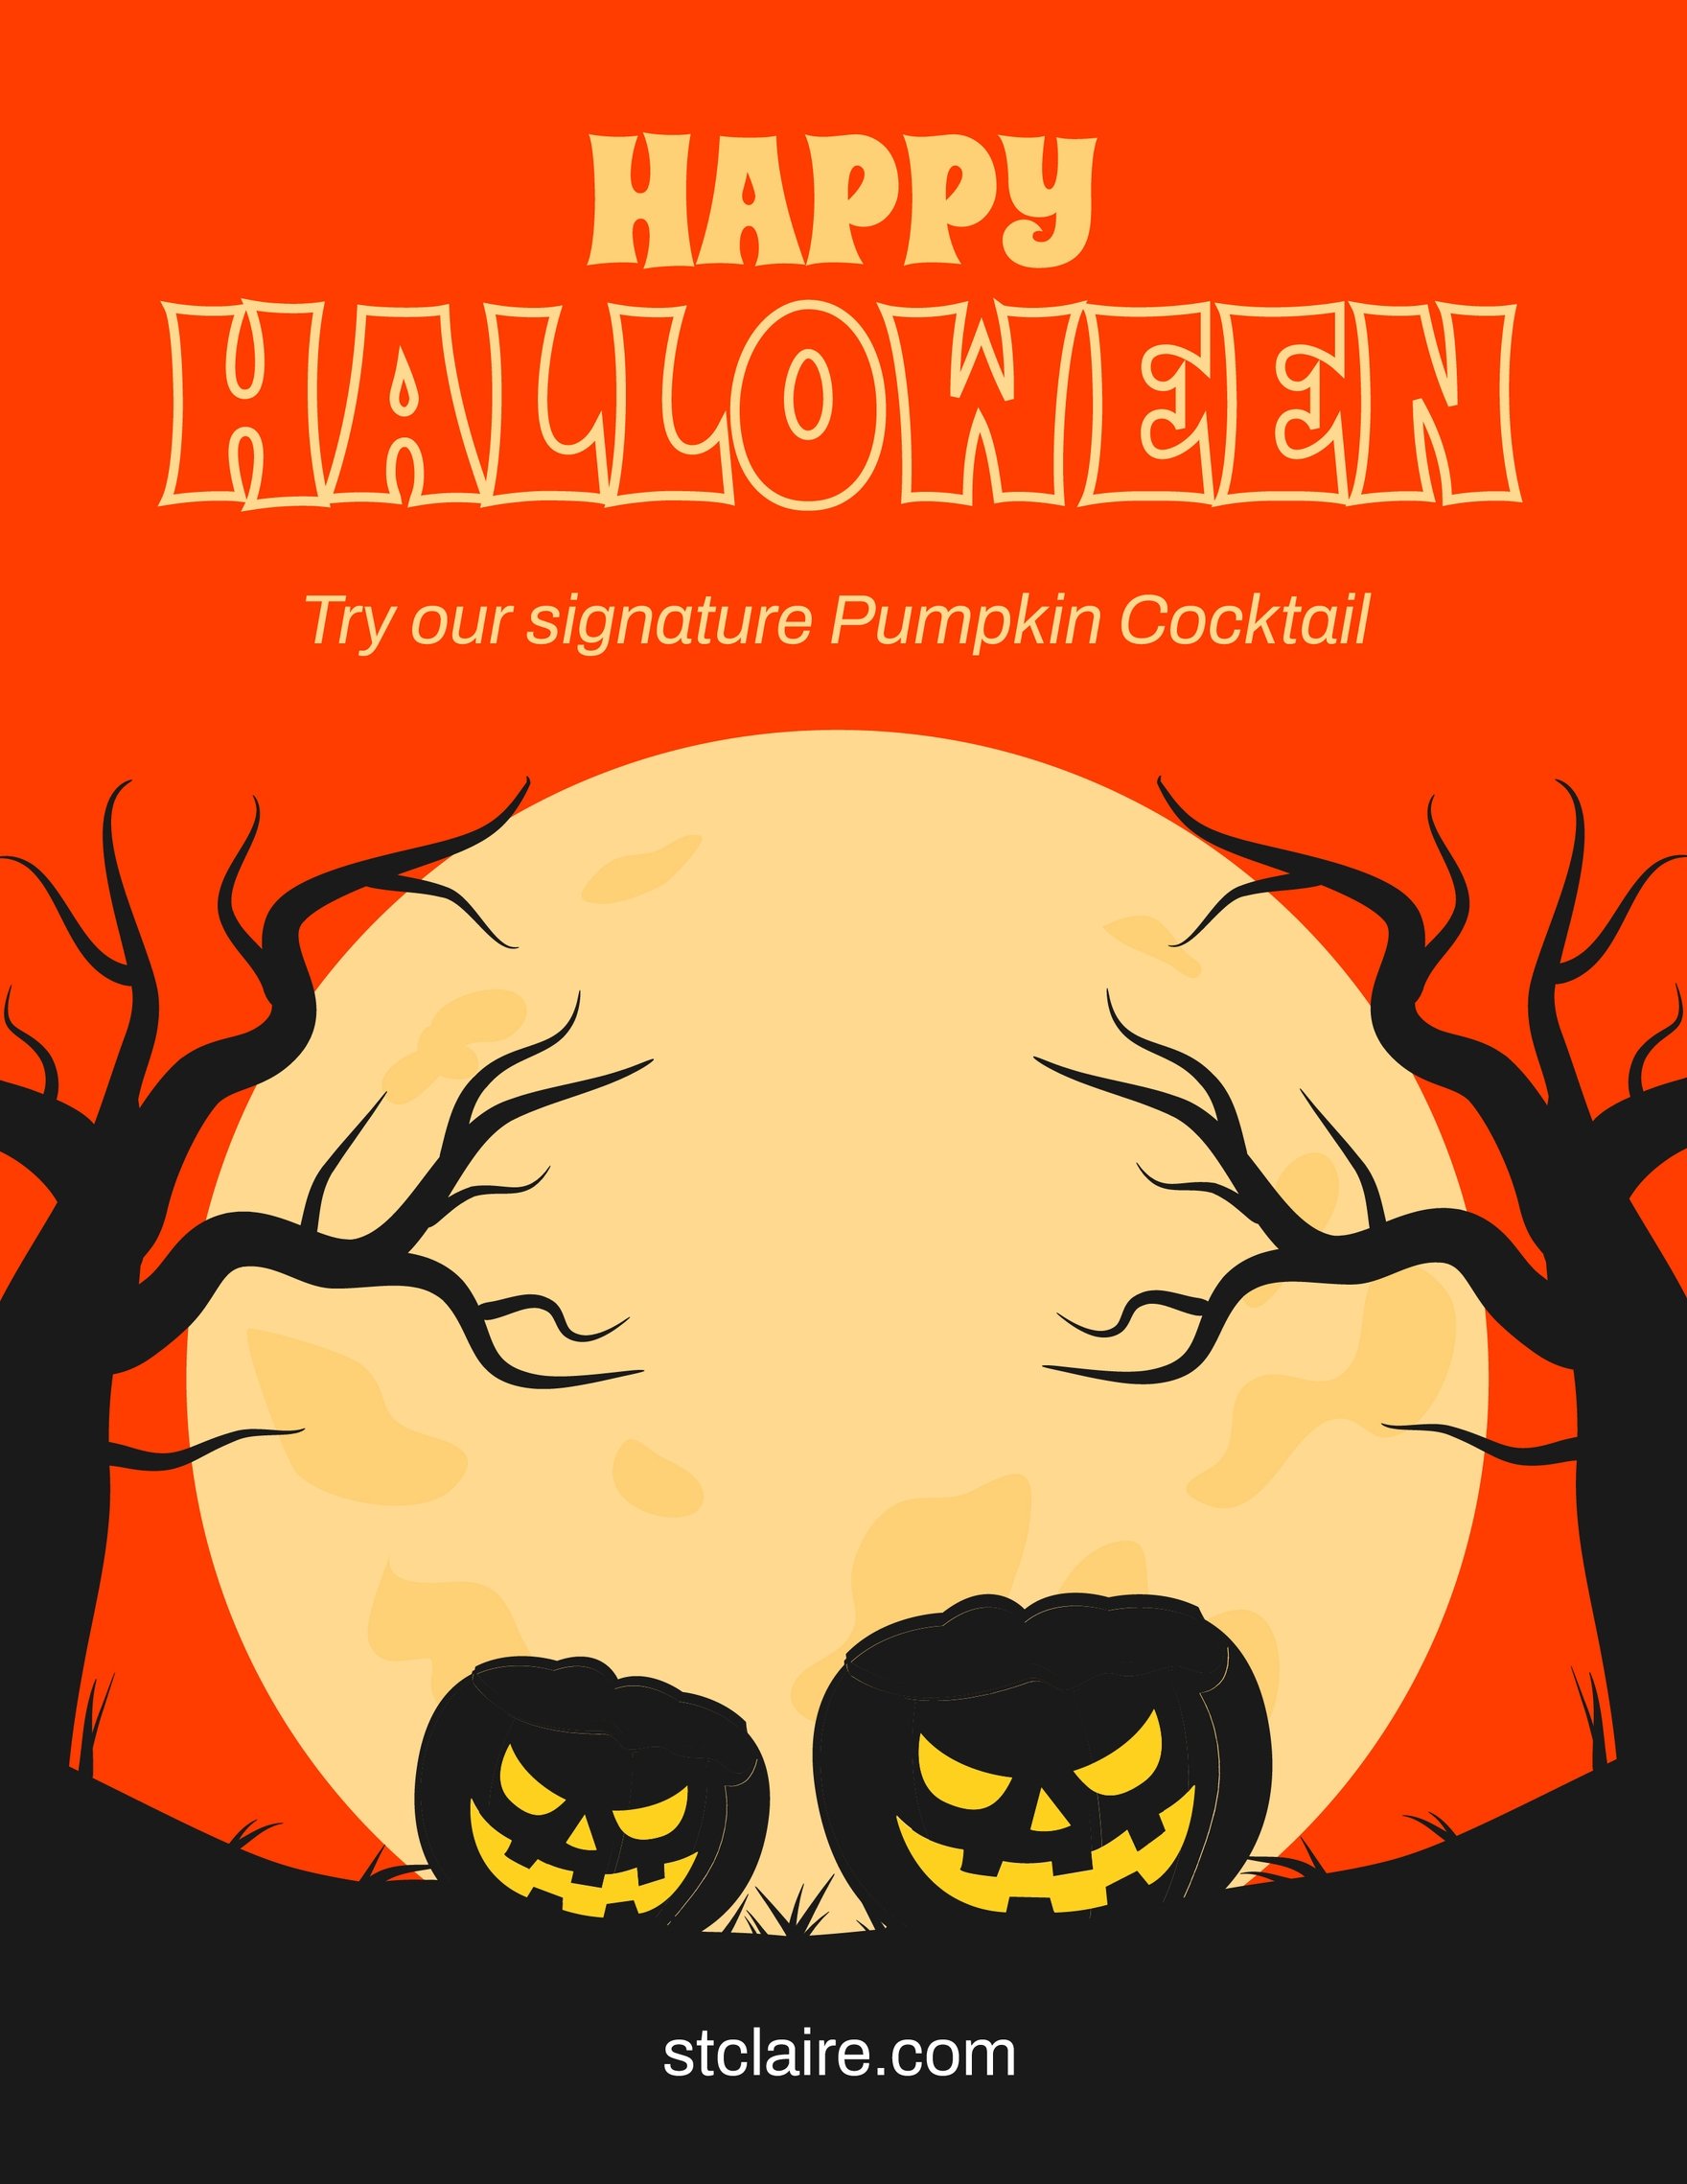 Free Halloween Mockup Flyer in Word, Google Docs, Illustrator, PSD, Apple Pages, Publisher, EPS, SVG, JPG, PNG